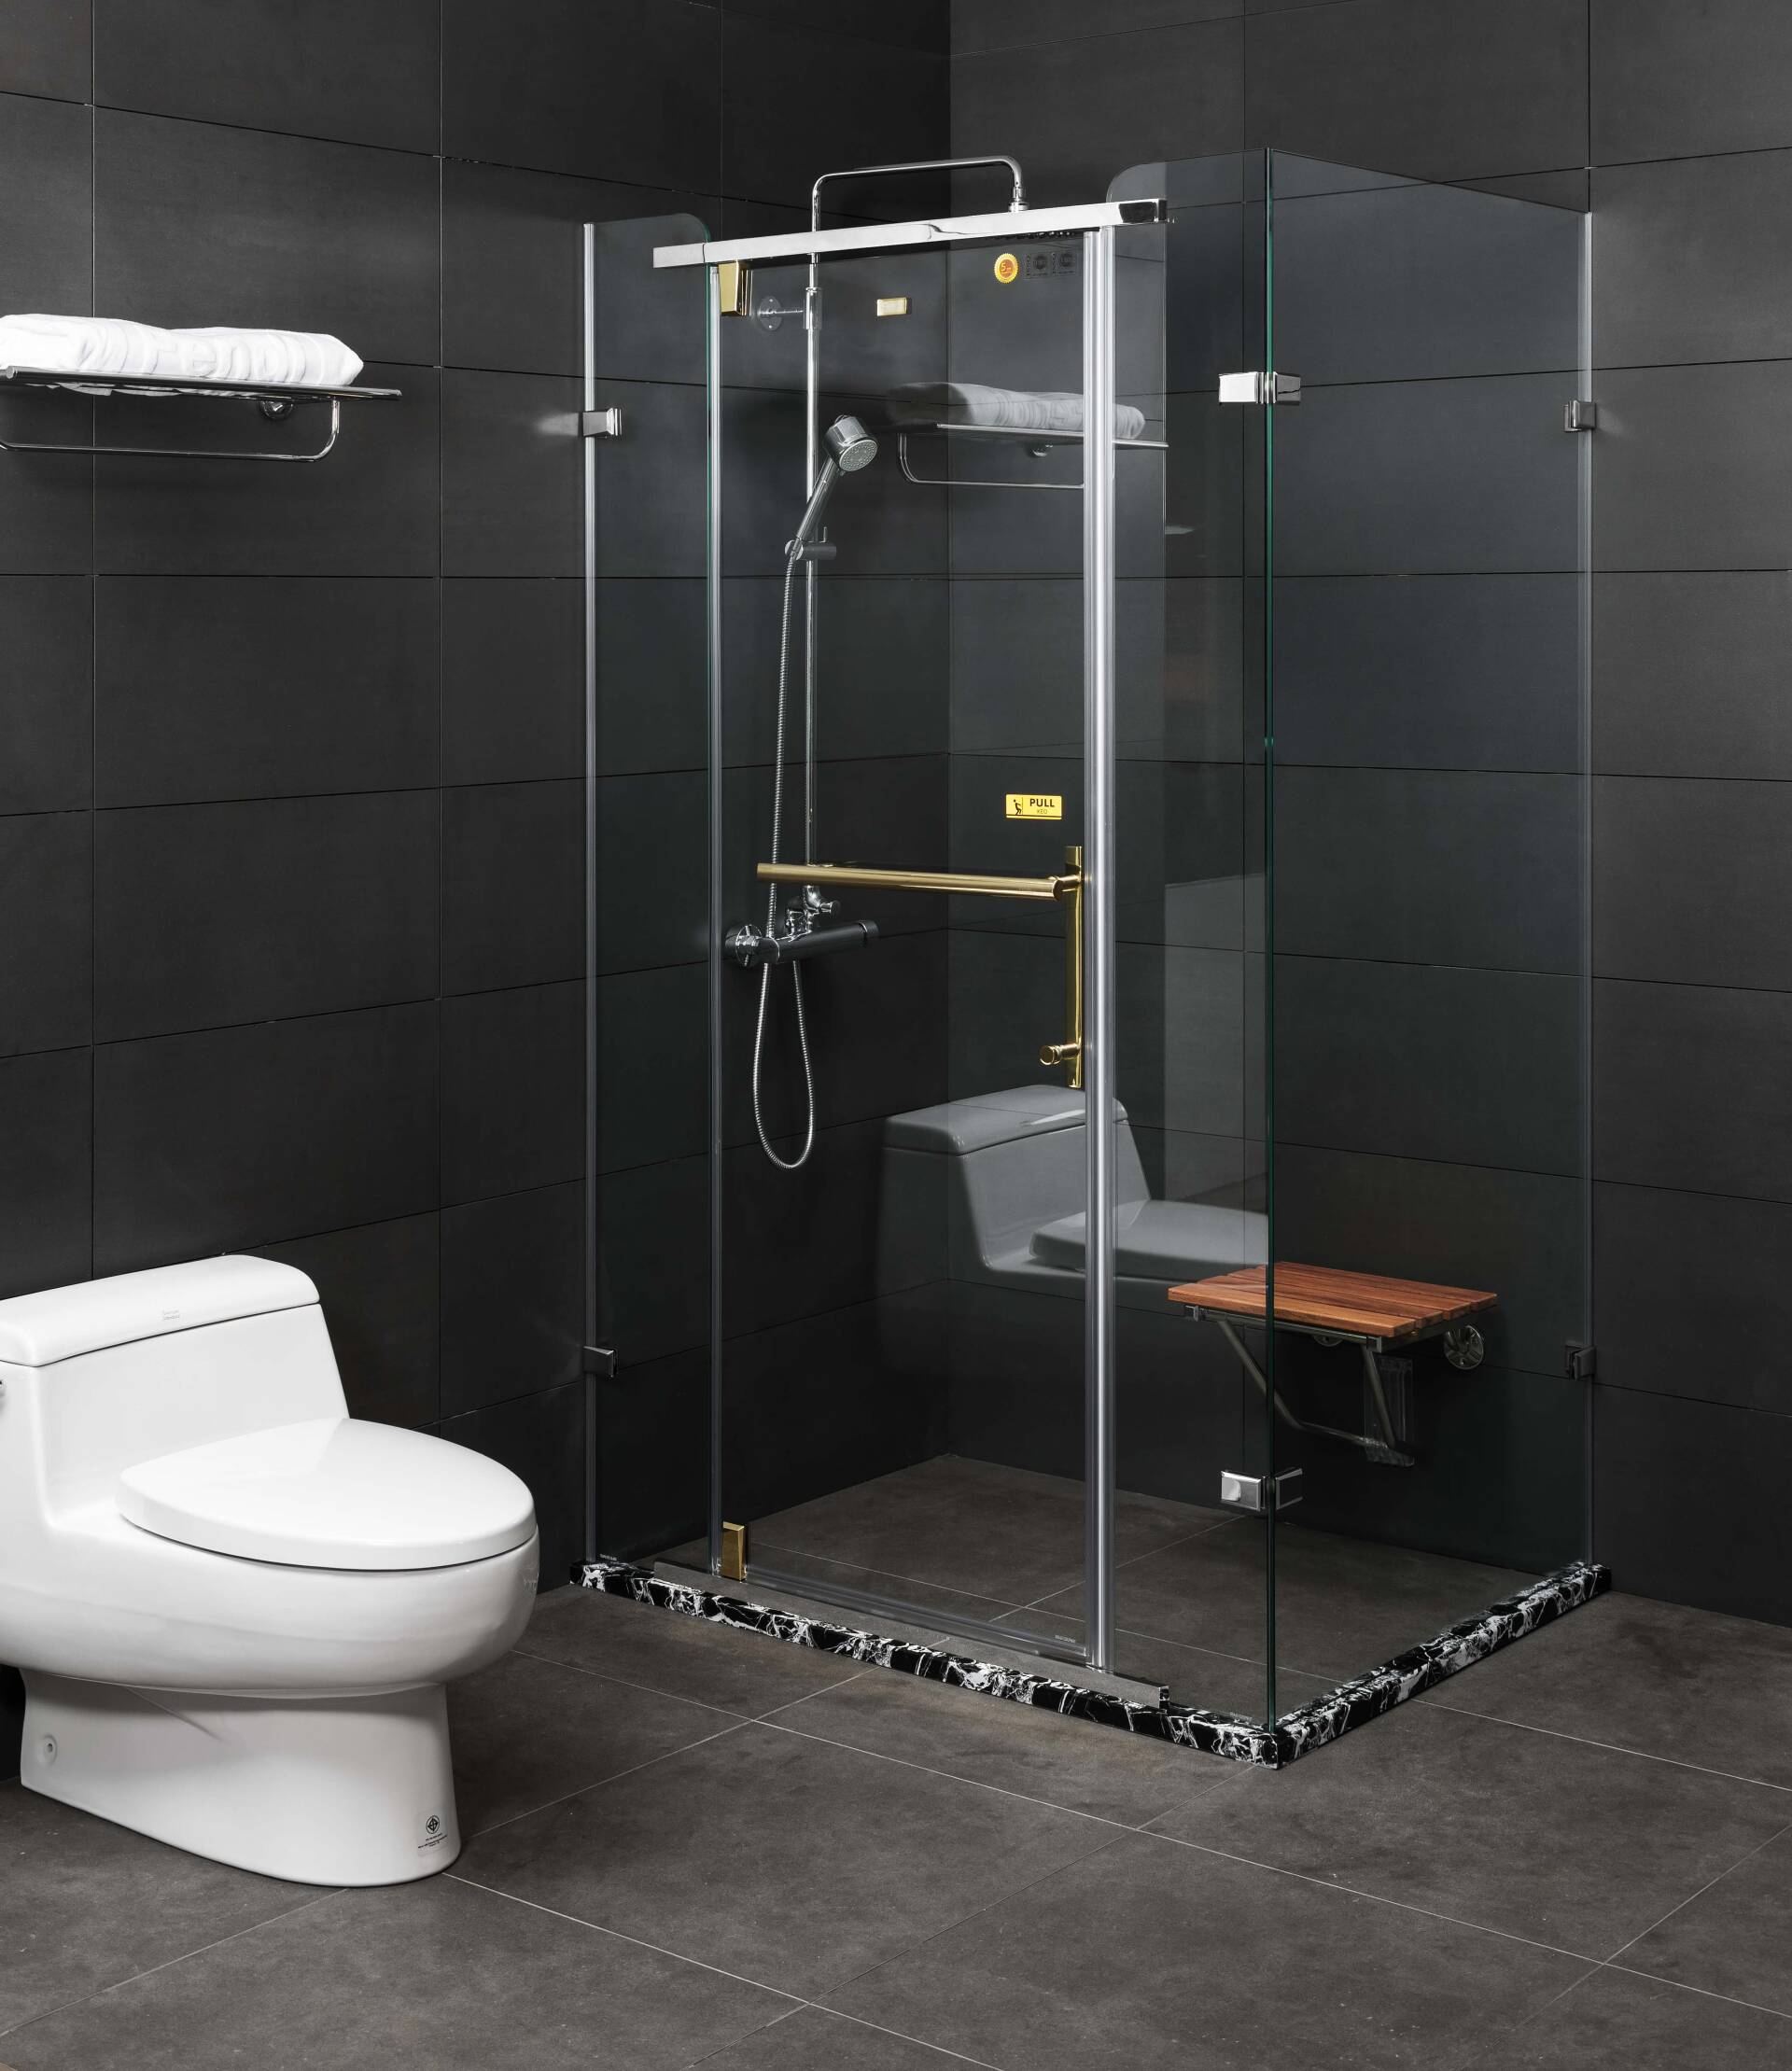 Phòng tắm kính vuông góc cửa xoay mang đến vẻ sang trọng, hiện đại cho phòng tắm